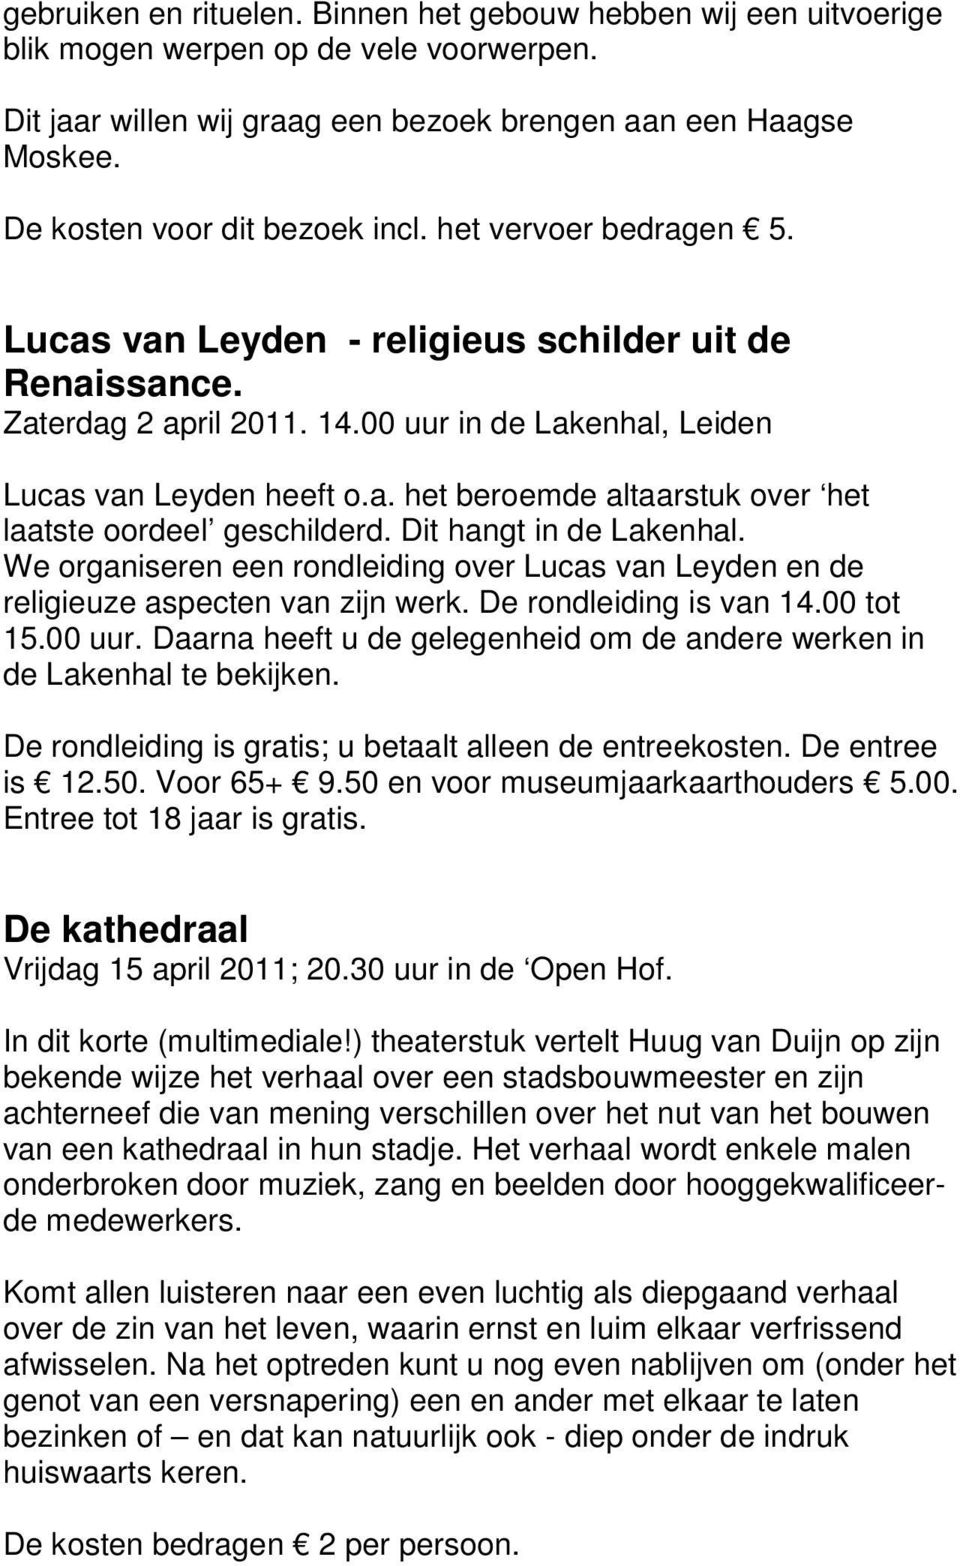 Dit hangt in de Lakenhal. We organiseren een rondleiding over Lucas van Leyden en de religieuze aspecten van zijn werk. De rondleiding is van 14.00 tot 15.00 uur.